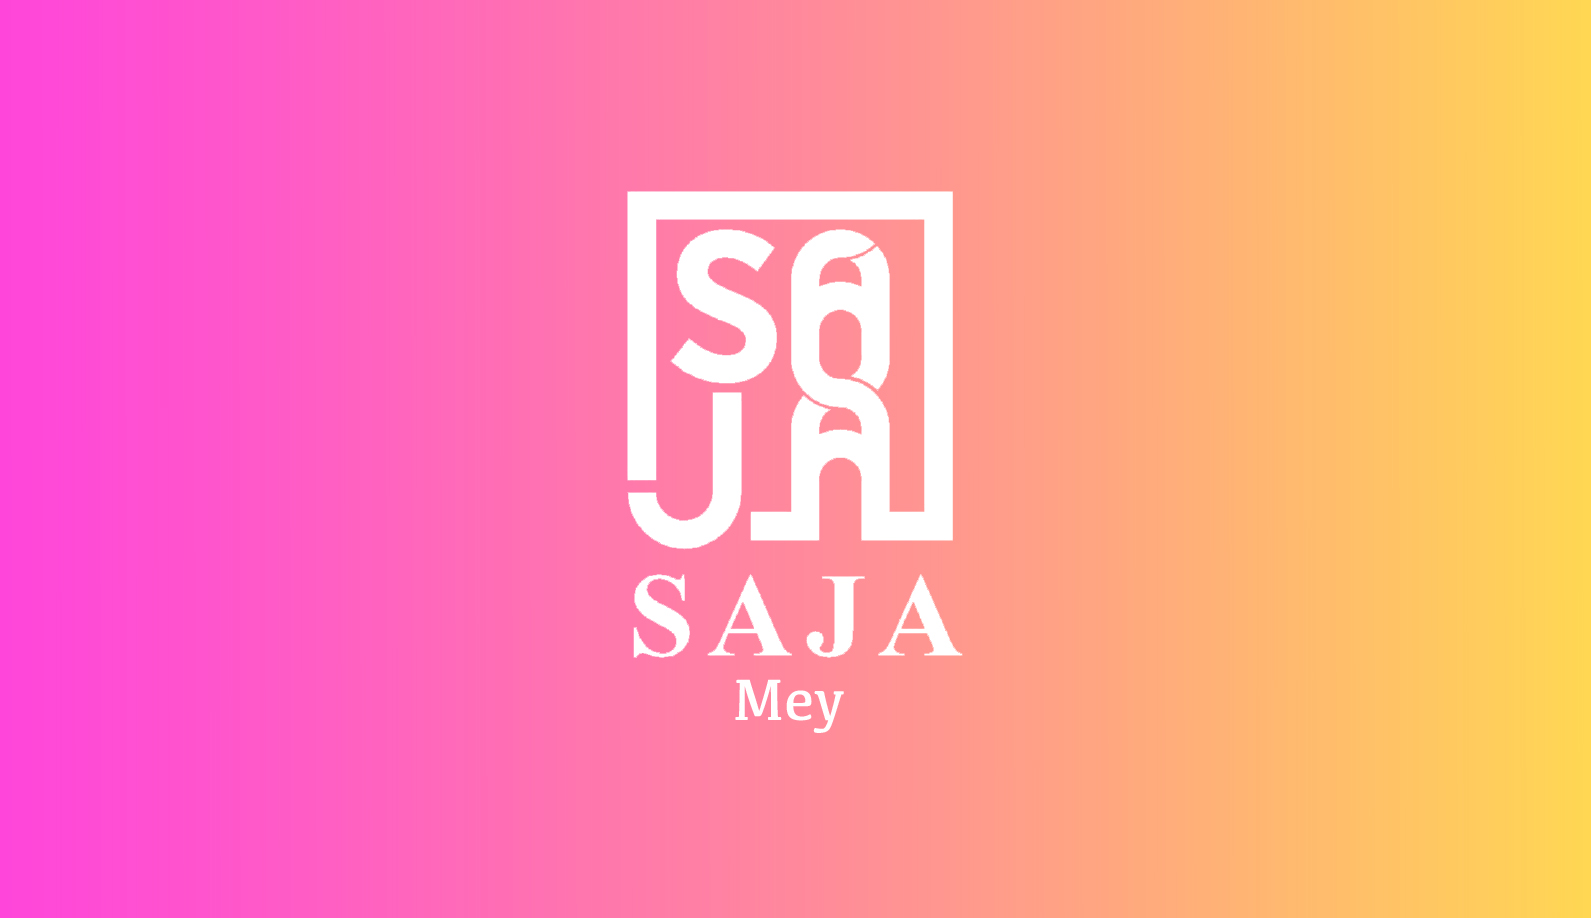 Saja Mey